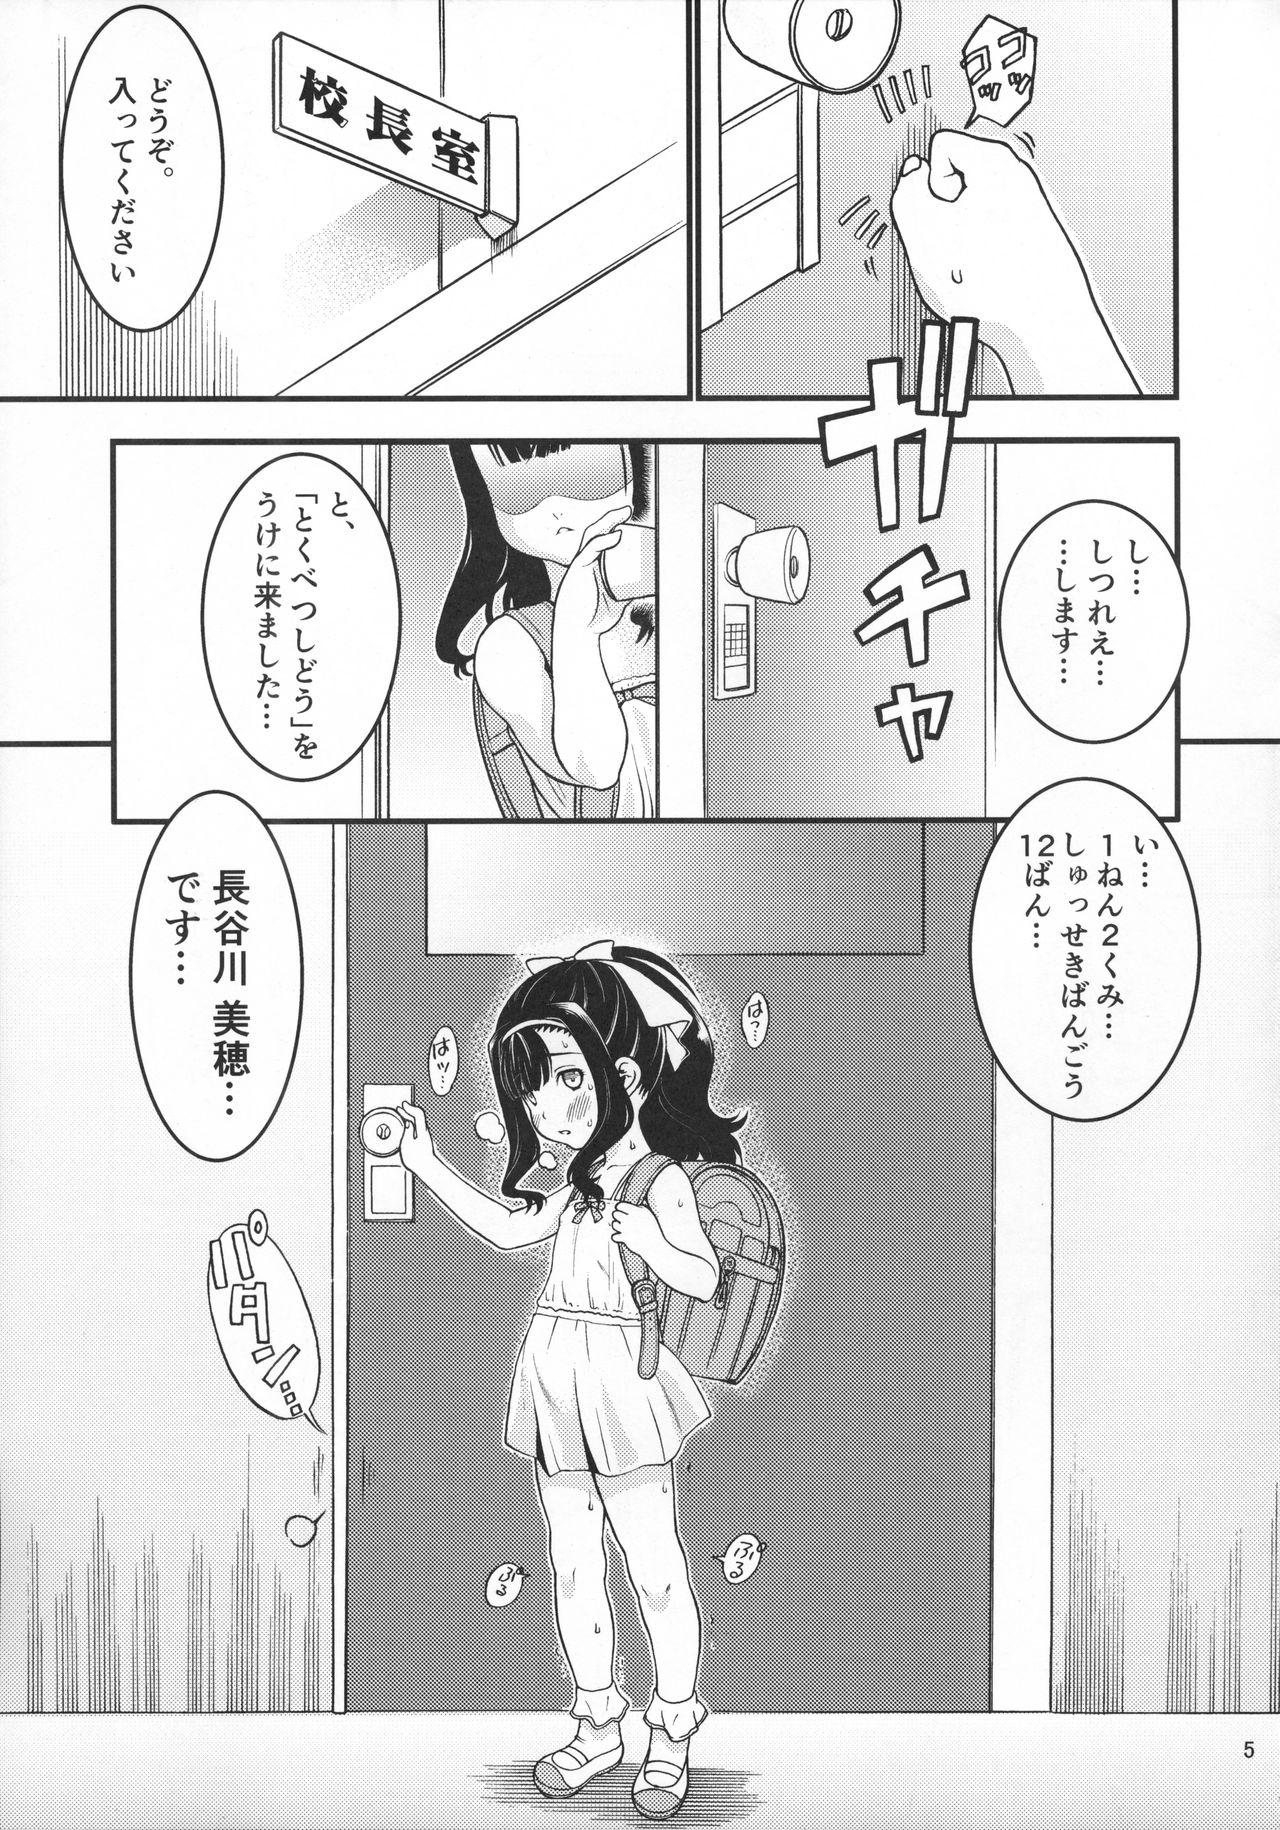 Mommy Heisei 29-nendo Tokushu Ginou Yuushuu Seito Shidou Youkou Carro - Page 7